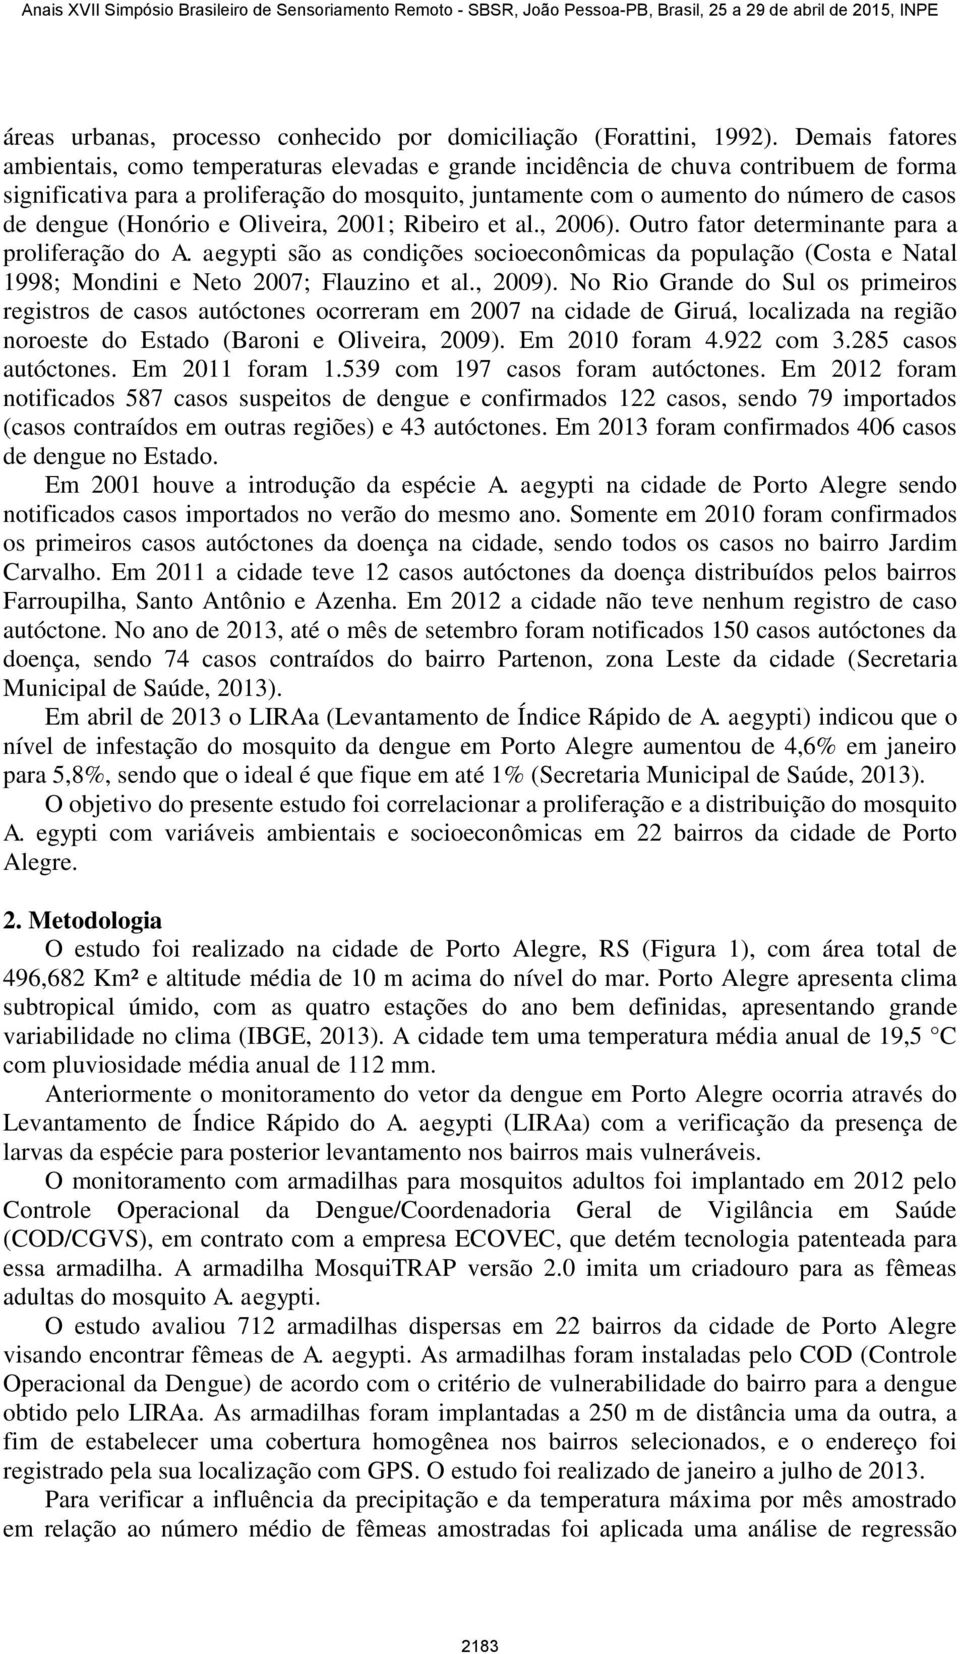 dengue (Honório e Oliveira, 2001; Ribeiro et al., 2006). Outro fator determinante para a proliferação do A.